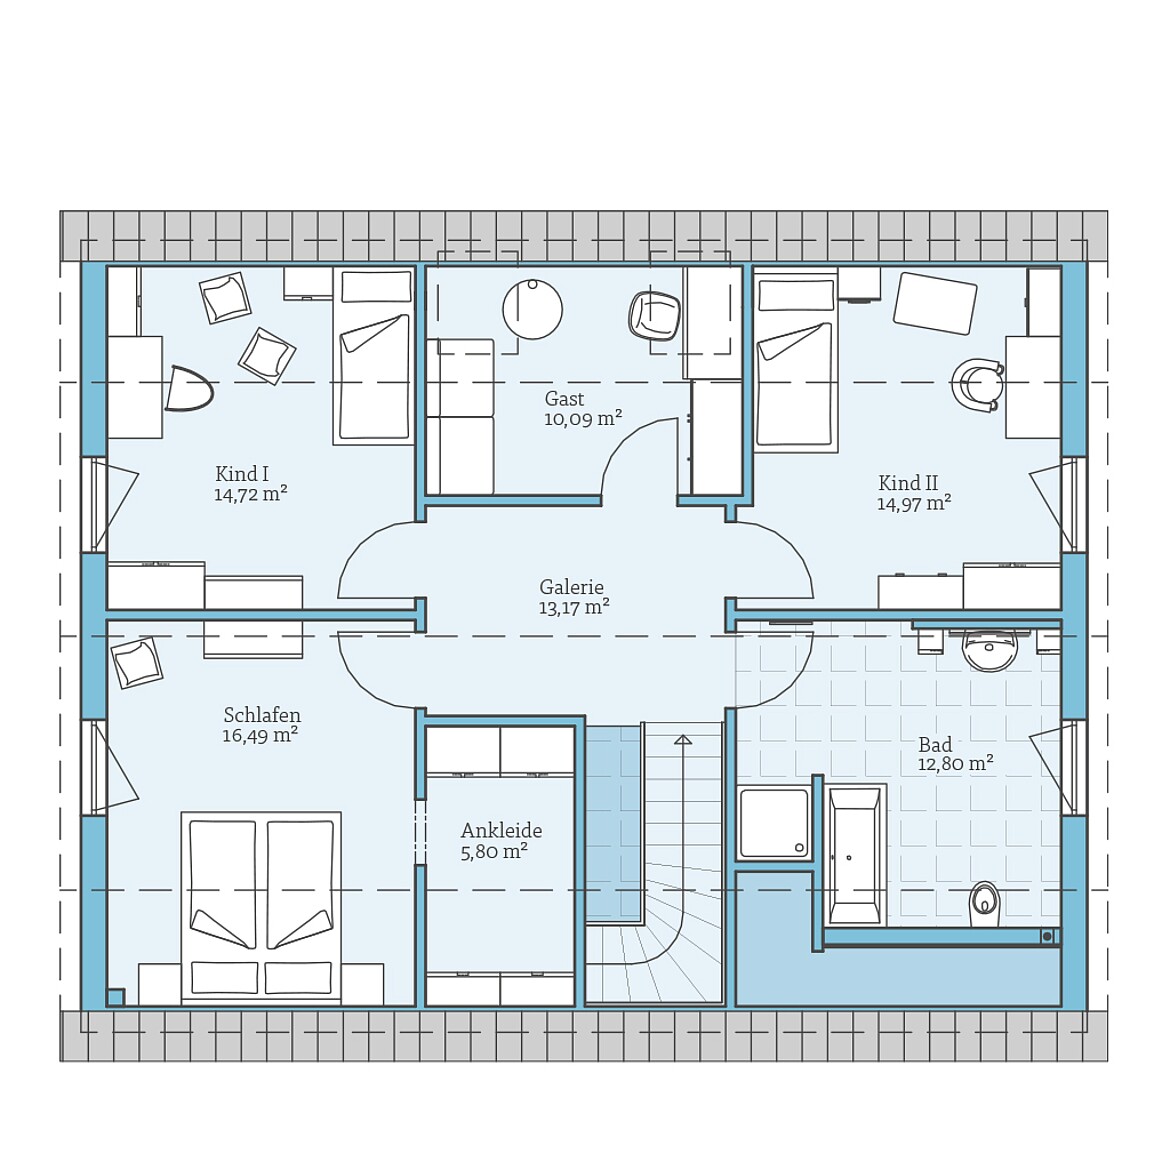 Prefabricated house Variant 35-184: Top floor plan